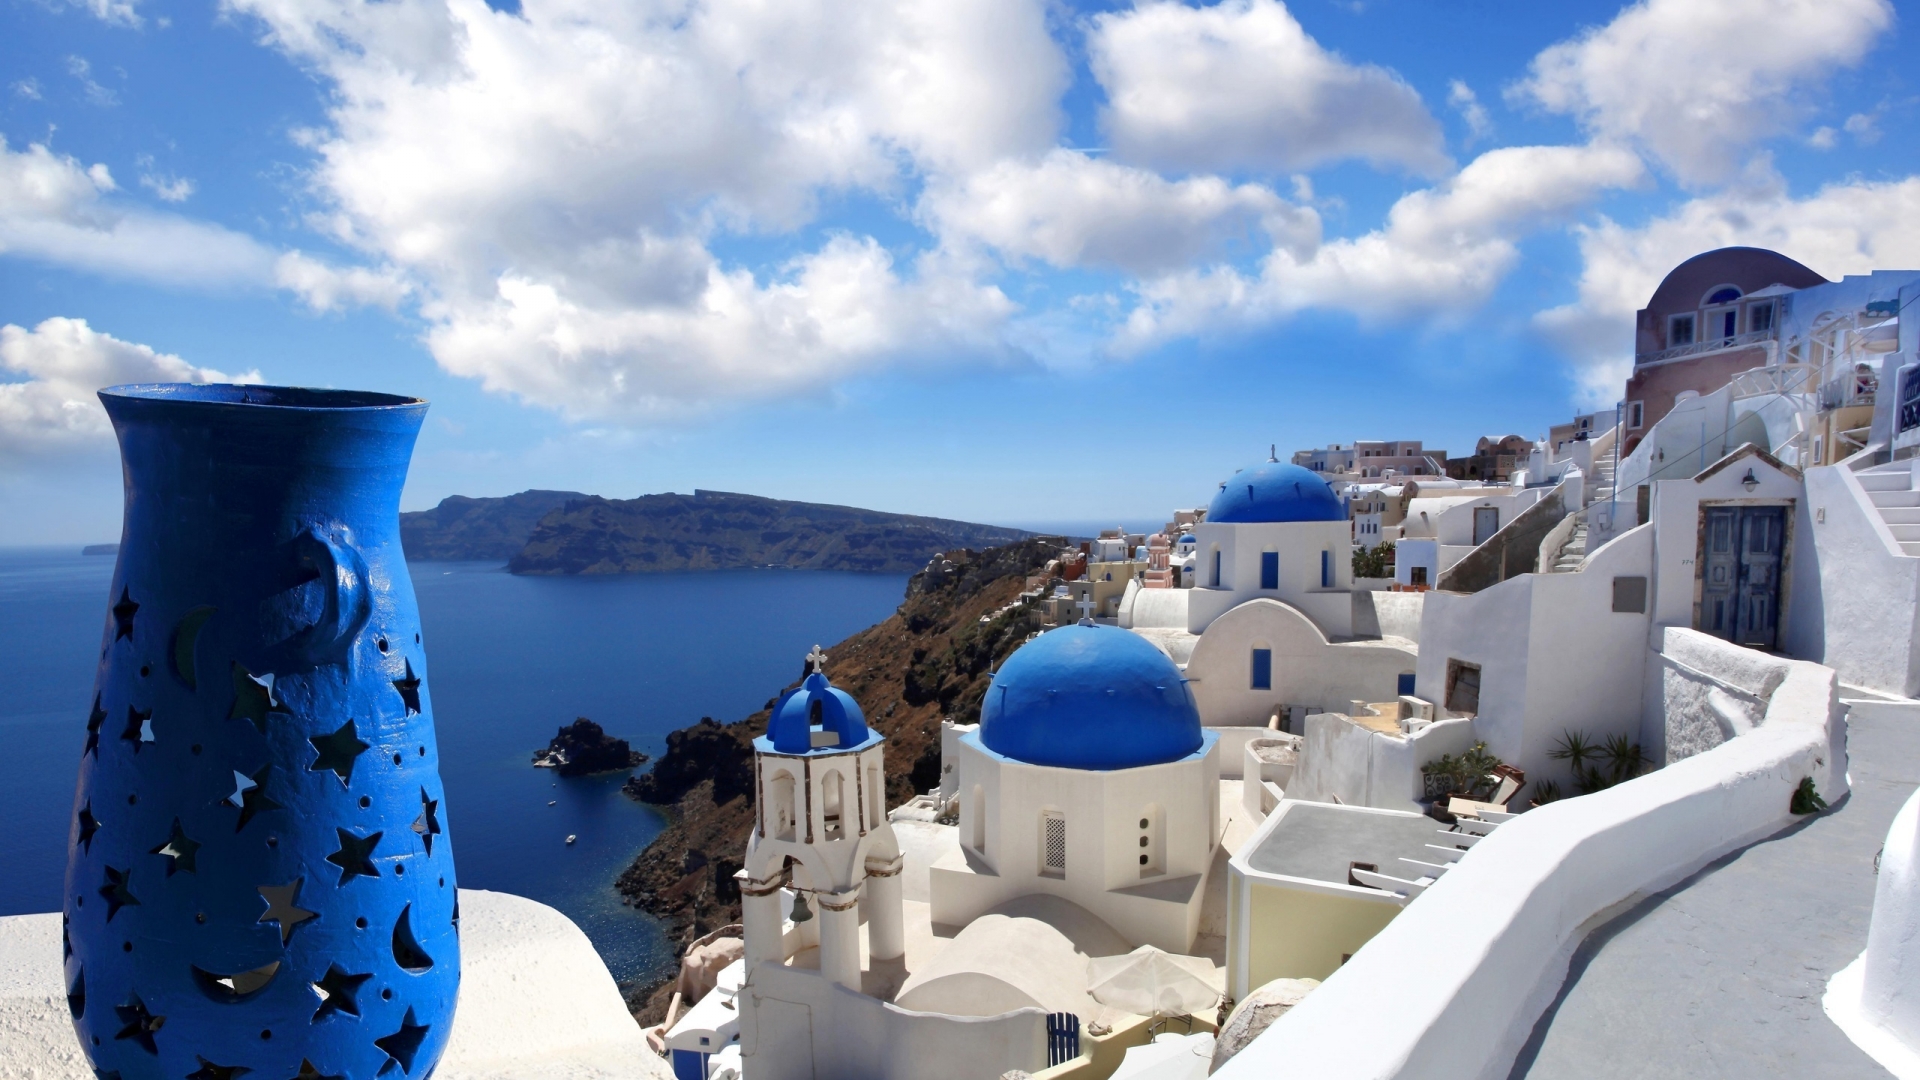 Blue Santorini Greece for 1920 x 1080 HDTV 1080p resolution